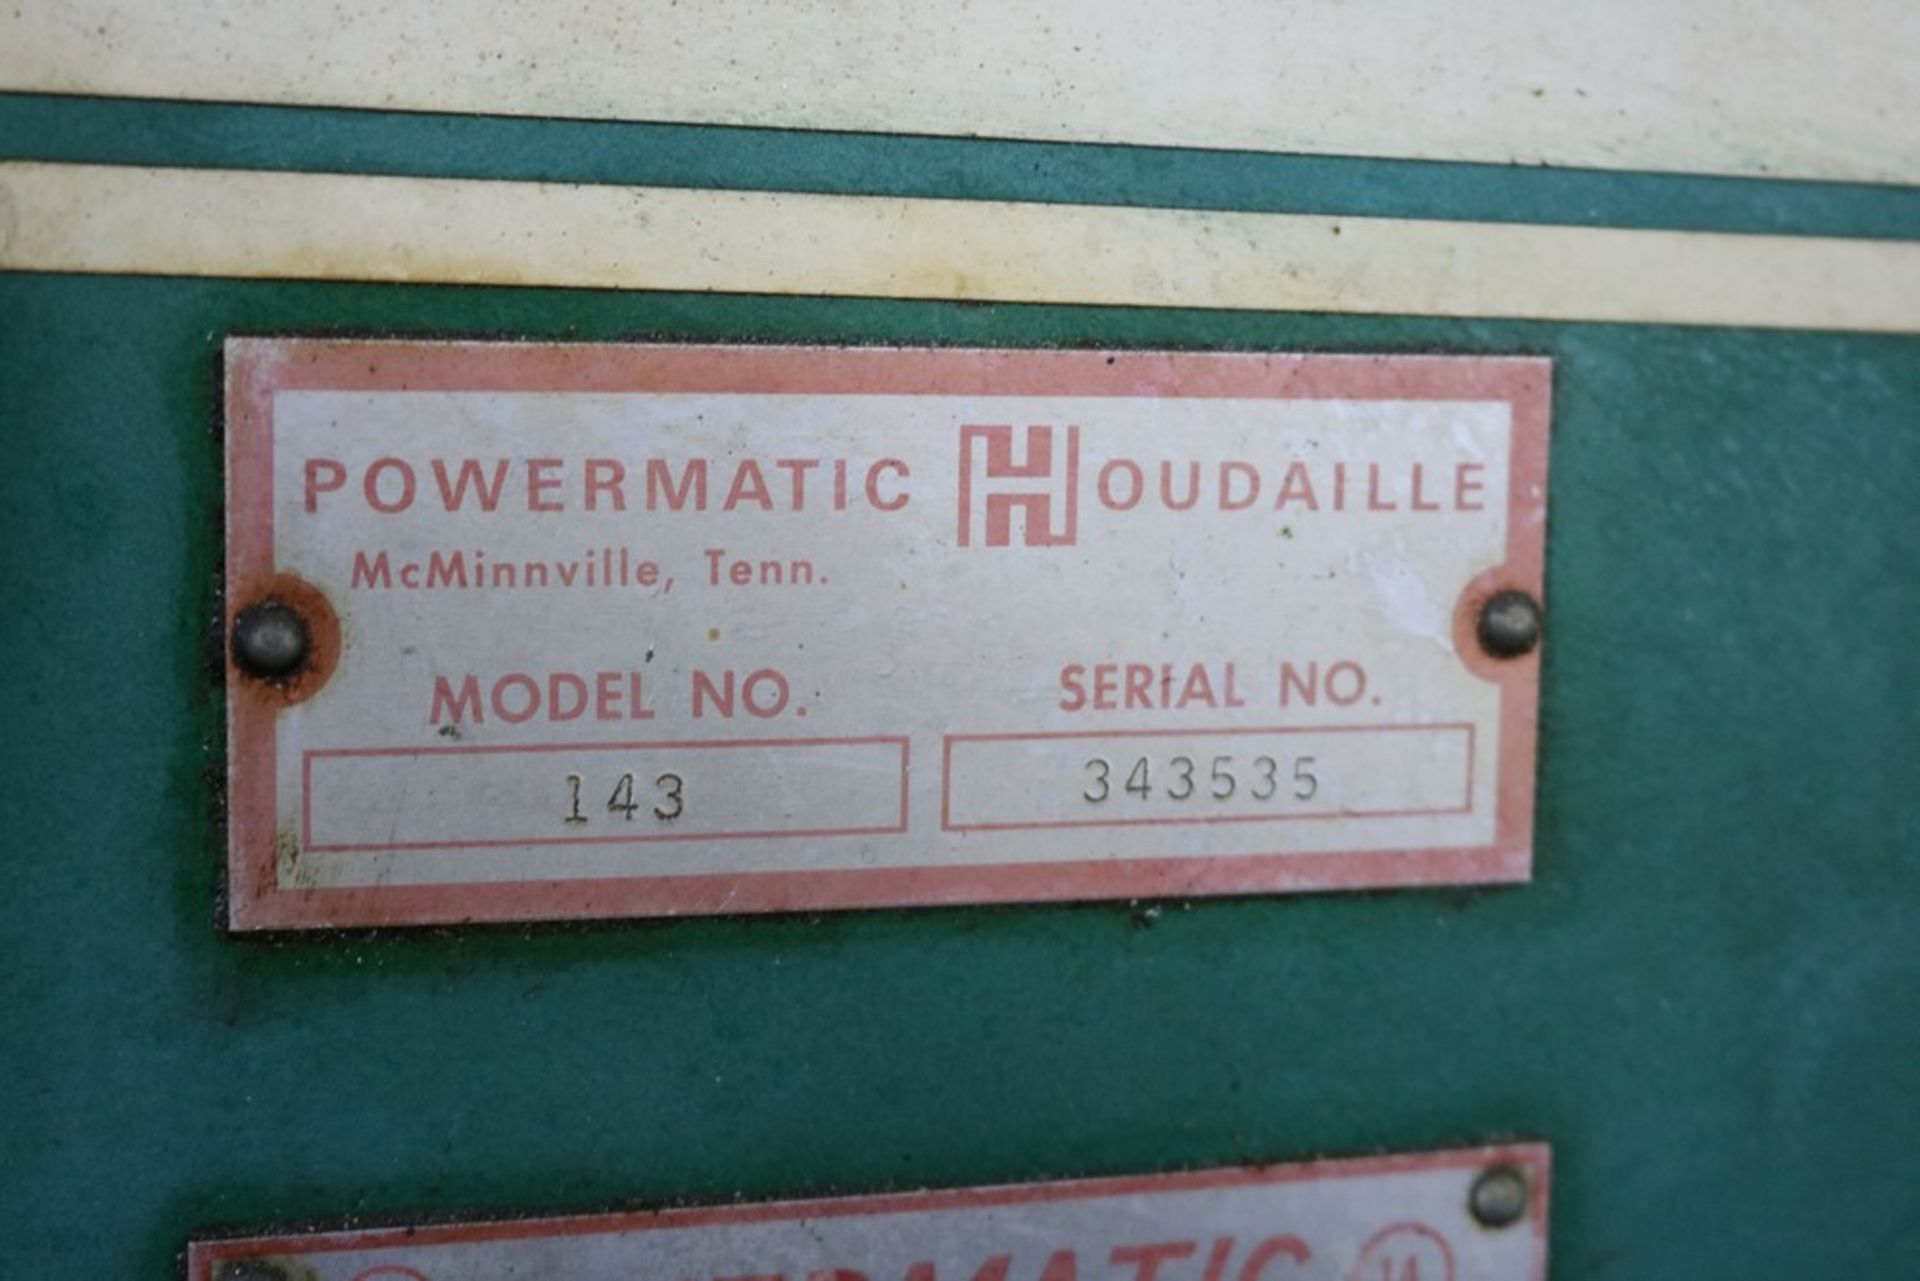 Powermatic Veritcal Bandsaw Model 143 - Image 2 of 5